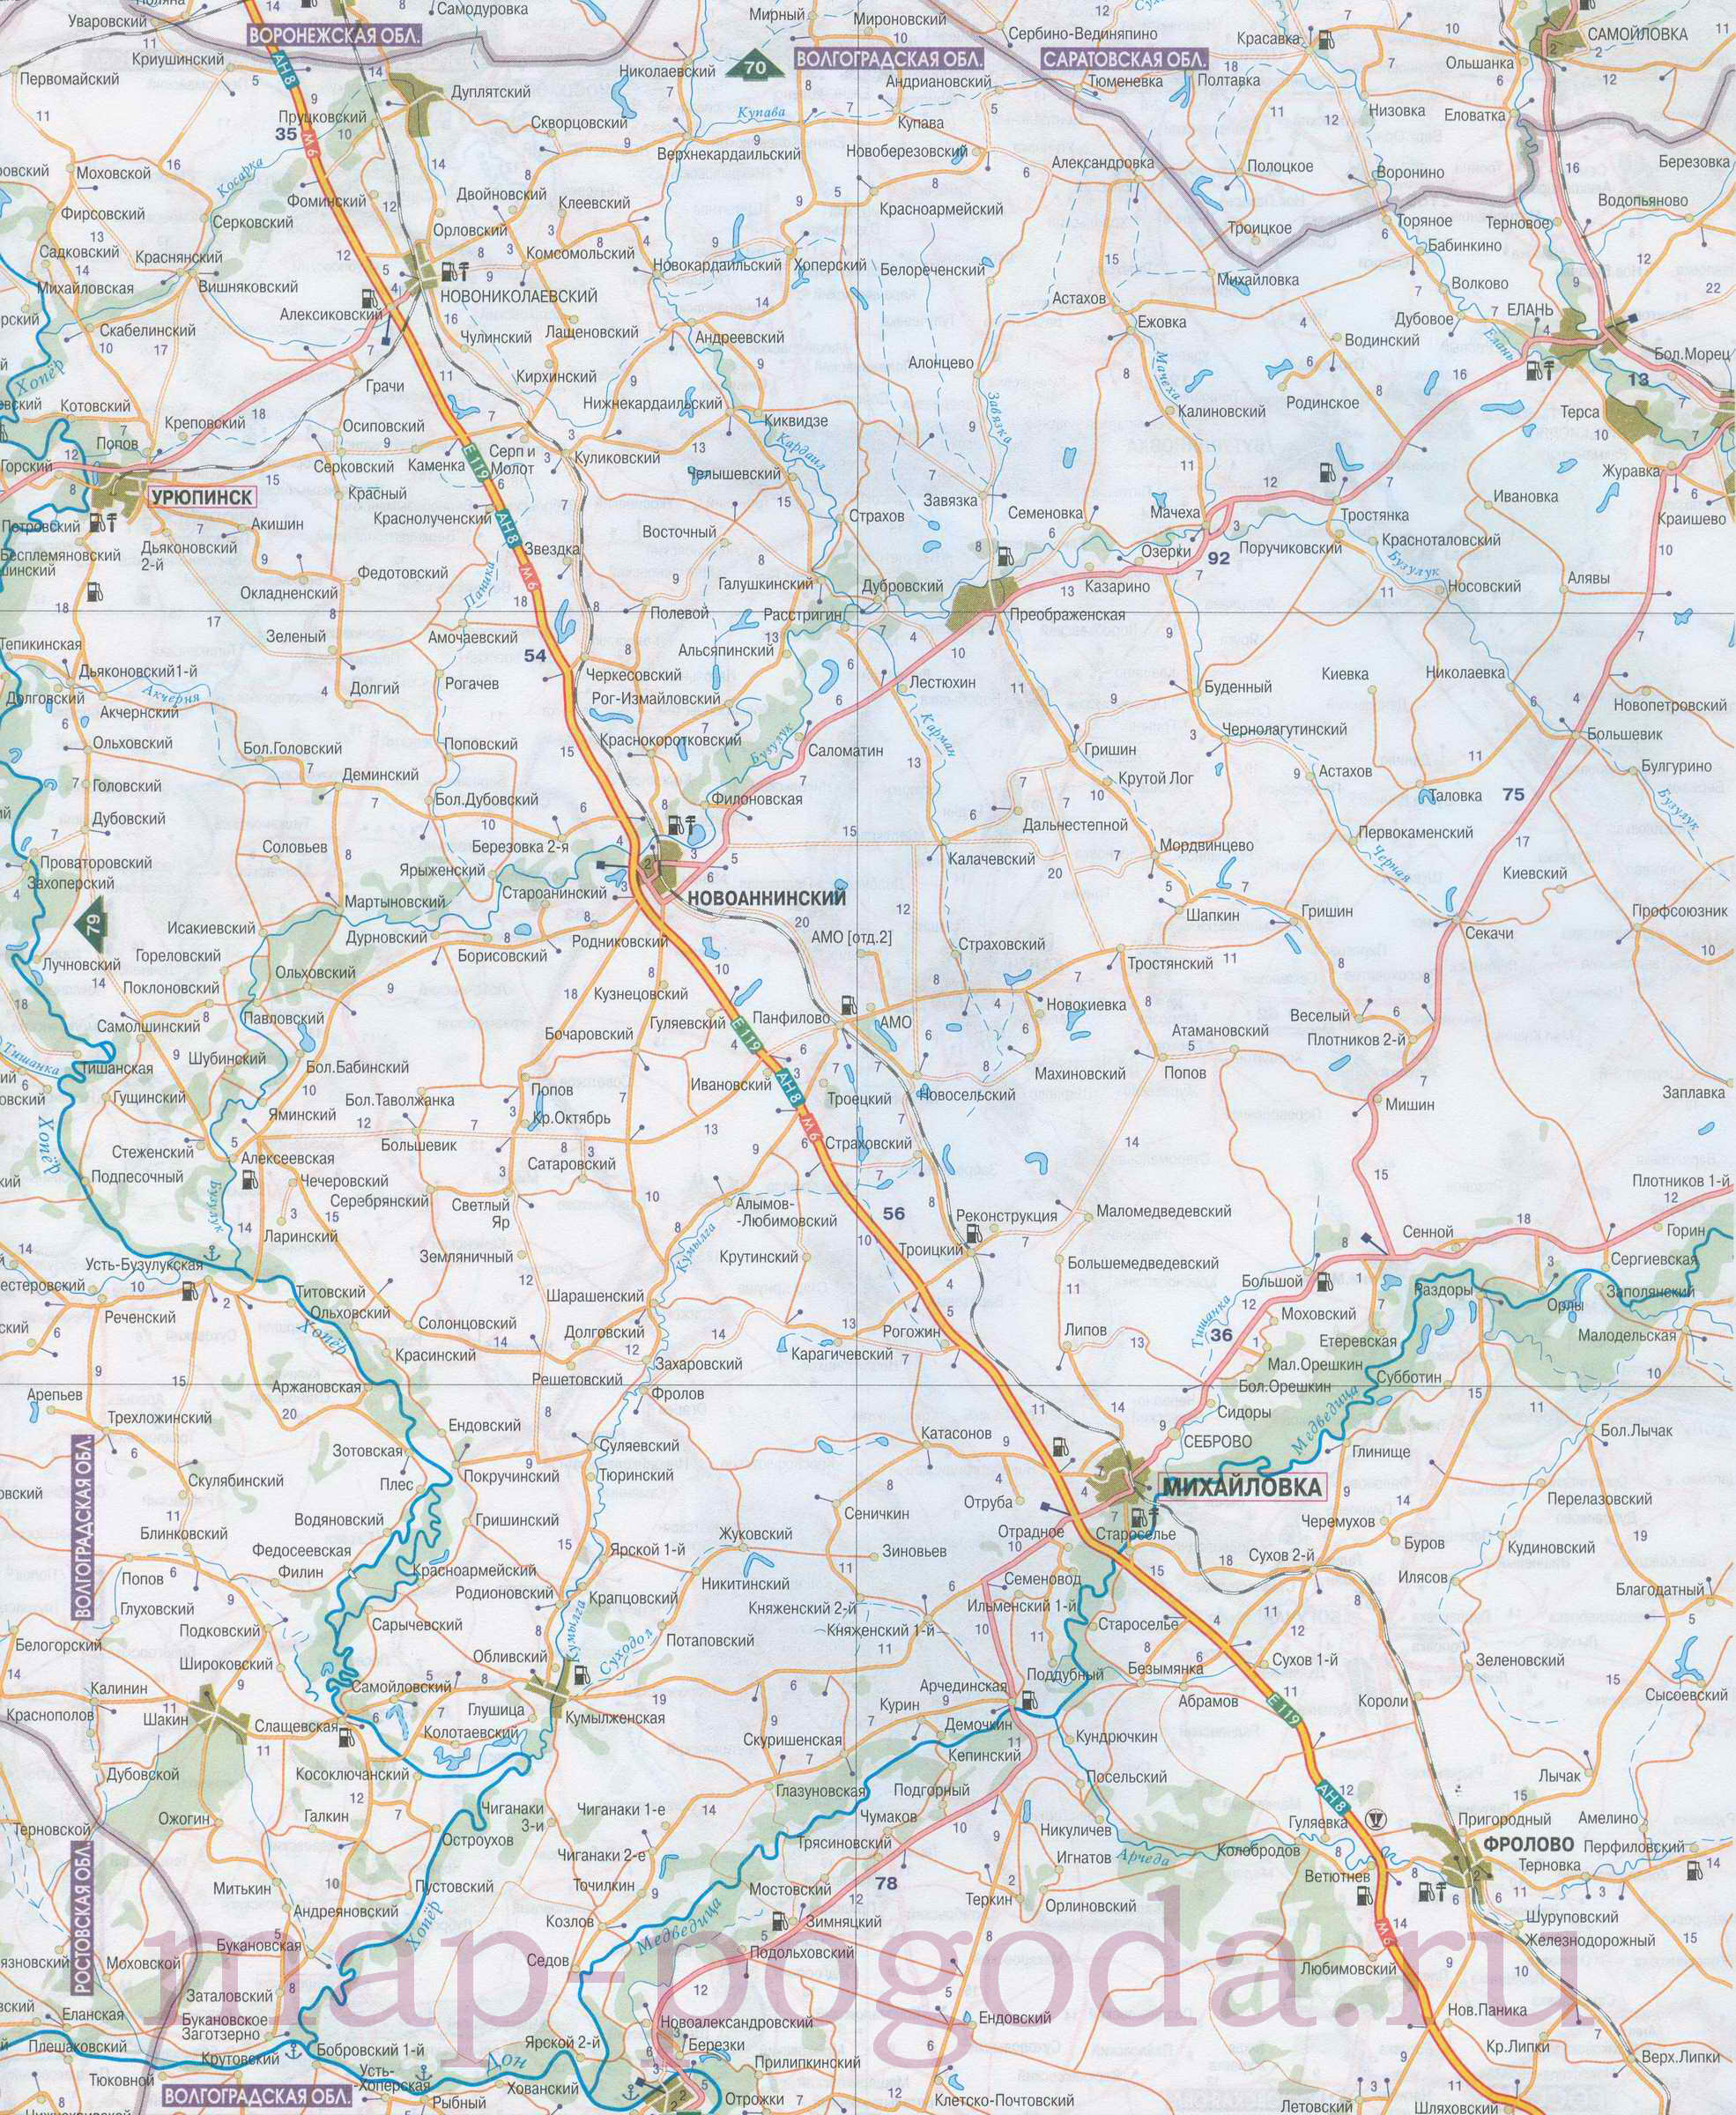 Карта Волгоградской области. Карта автомобильных дорог севера Волгоградской области масштаба 1см:7км, A0 - 